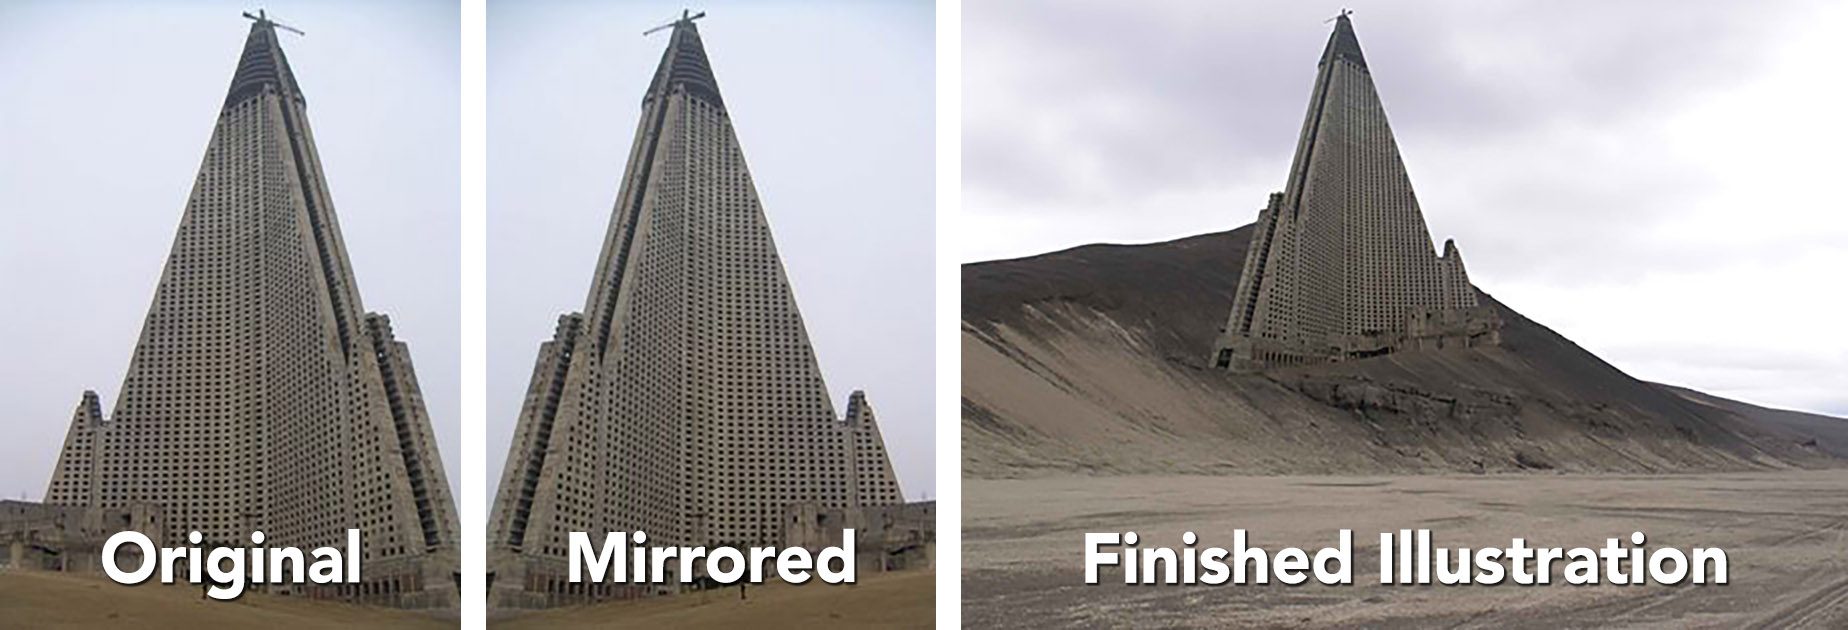 La imagen del Hotel Ryugyong del edificio de la pirámide en una duna de arena o una colina de tierra proviene originalmente de una ilustración de Nicolas Moulin.